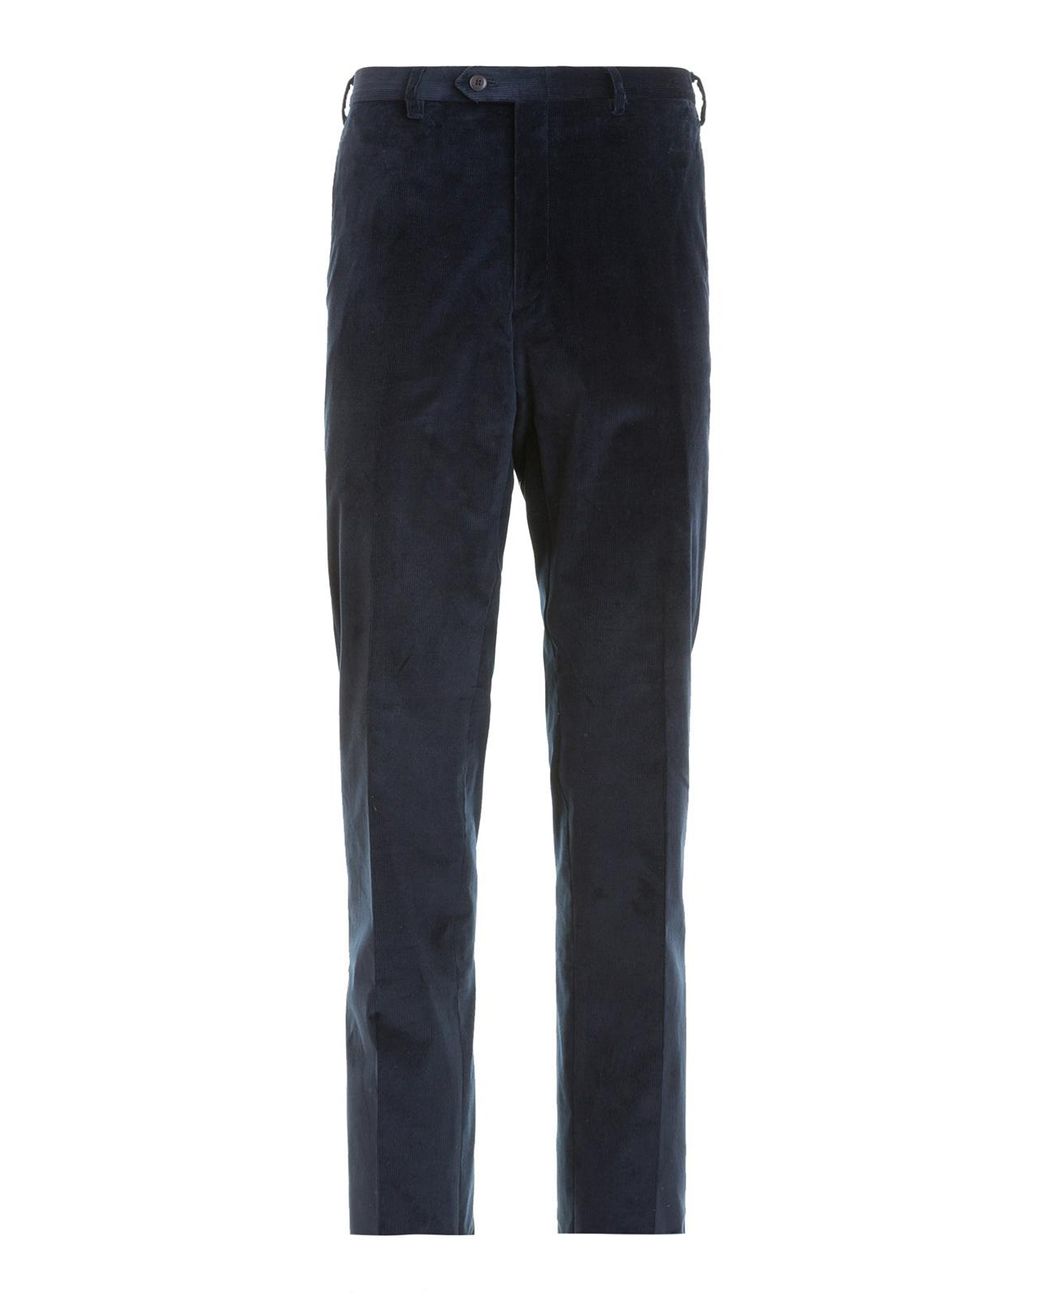 Brioni Tigullio Ribbed Velvet Trousers in Dark Blue (Blue) for Men - Lyst